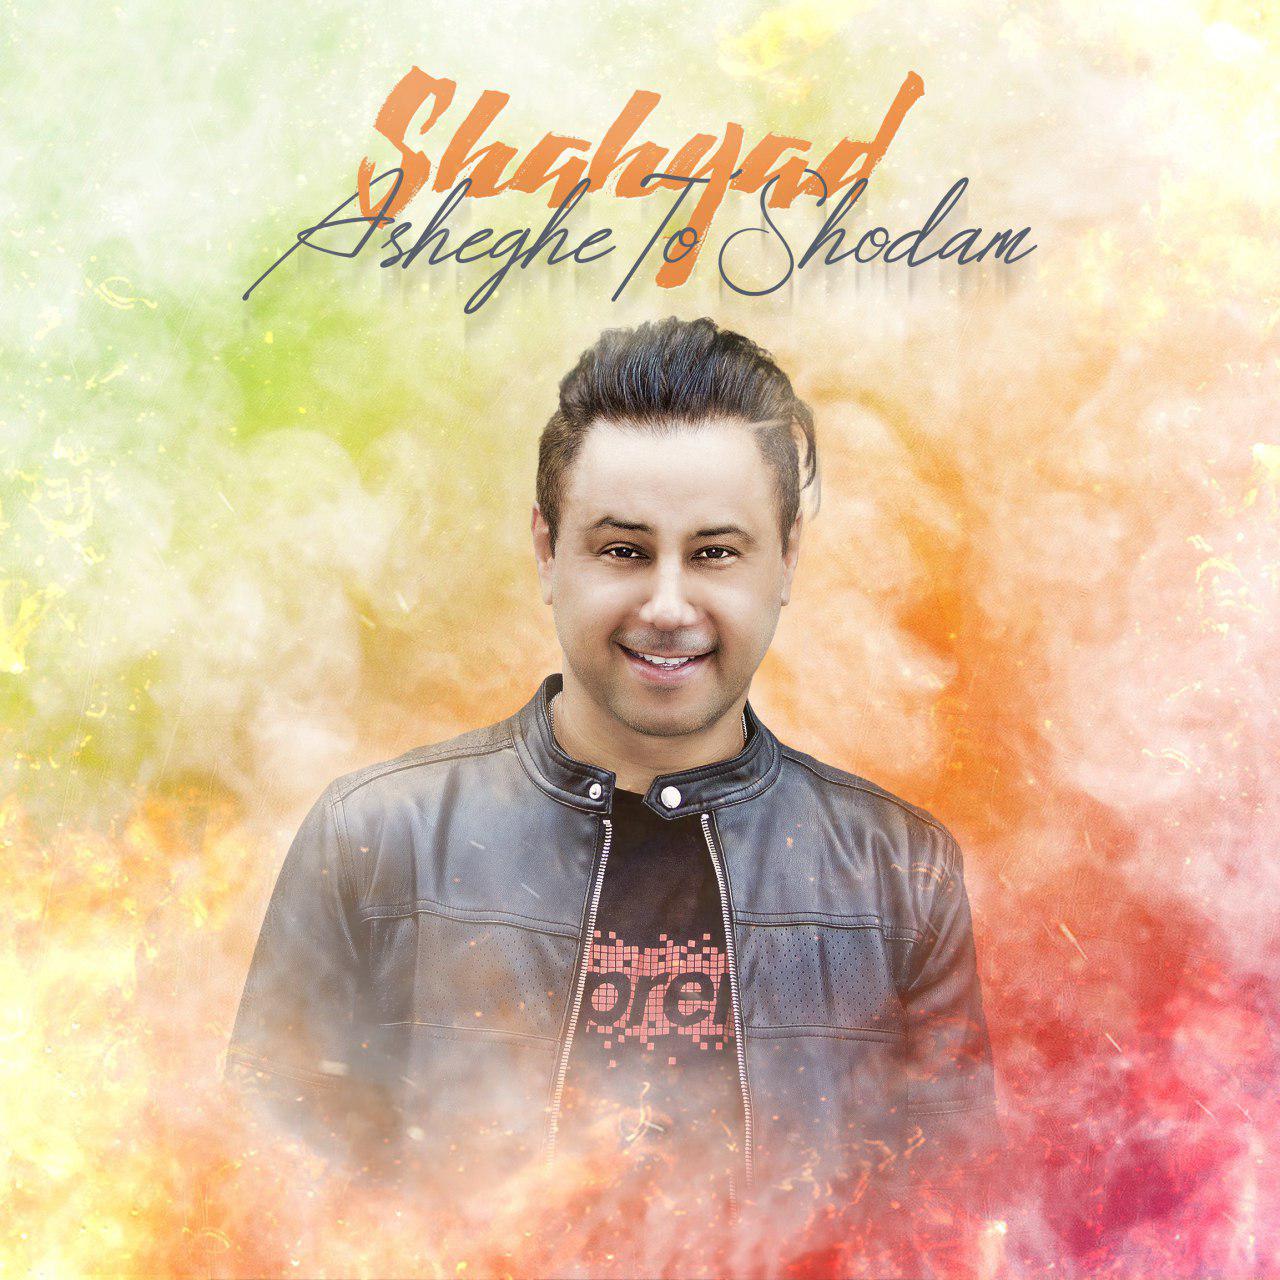  دانلود آهنگ جدید شهیاد - عاشق تو شدم | Download New Music By Shahyad - Asheghe To Shodam